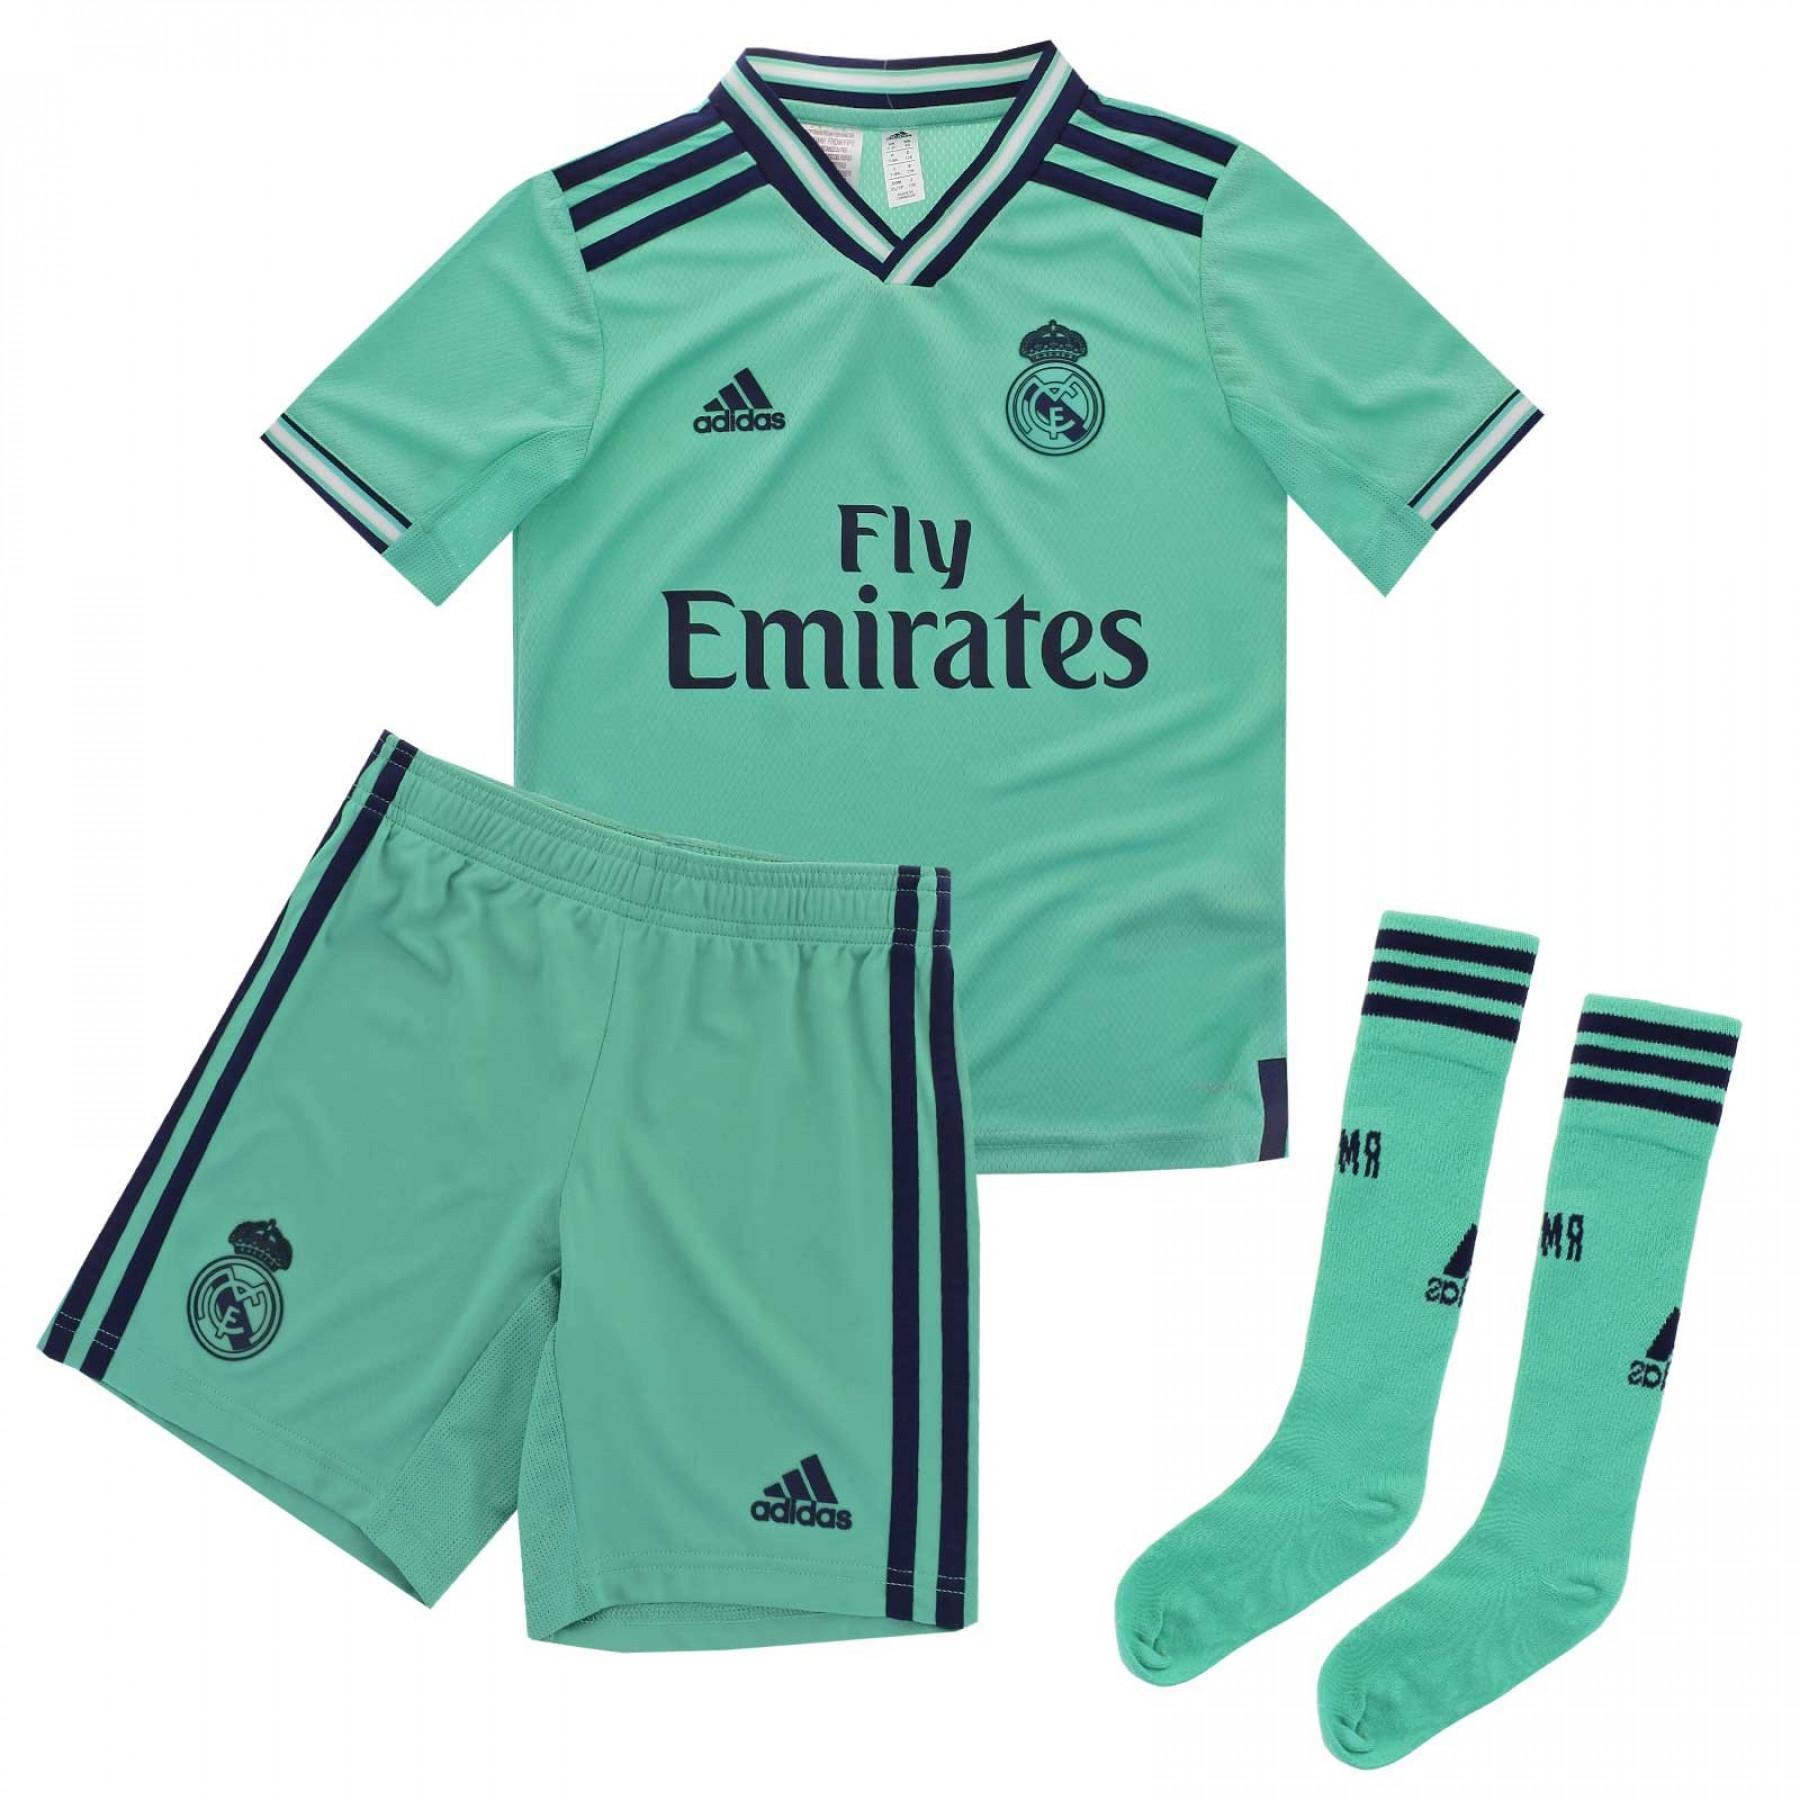 Mini-kit tredje Real Madrid 2019/20